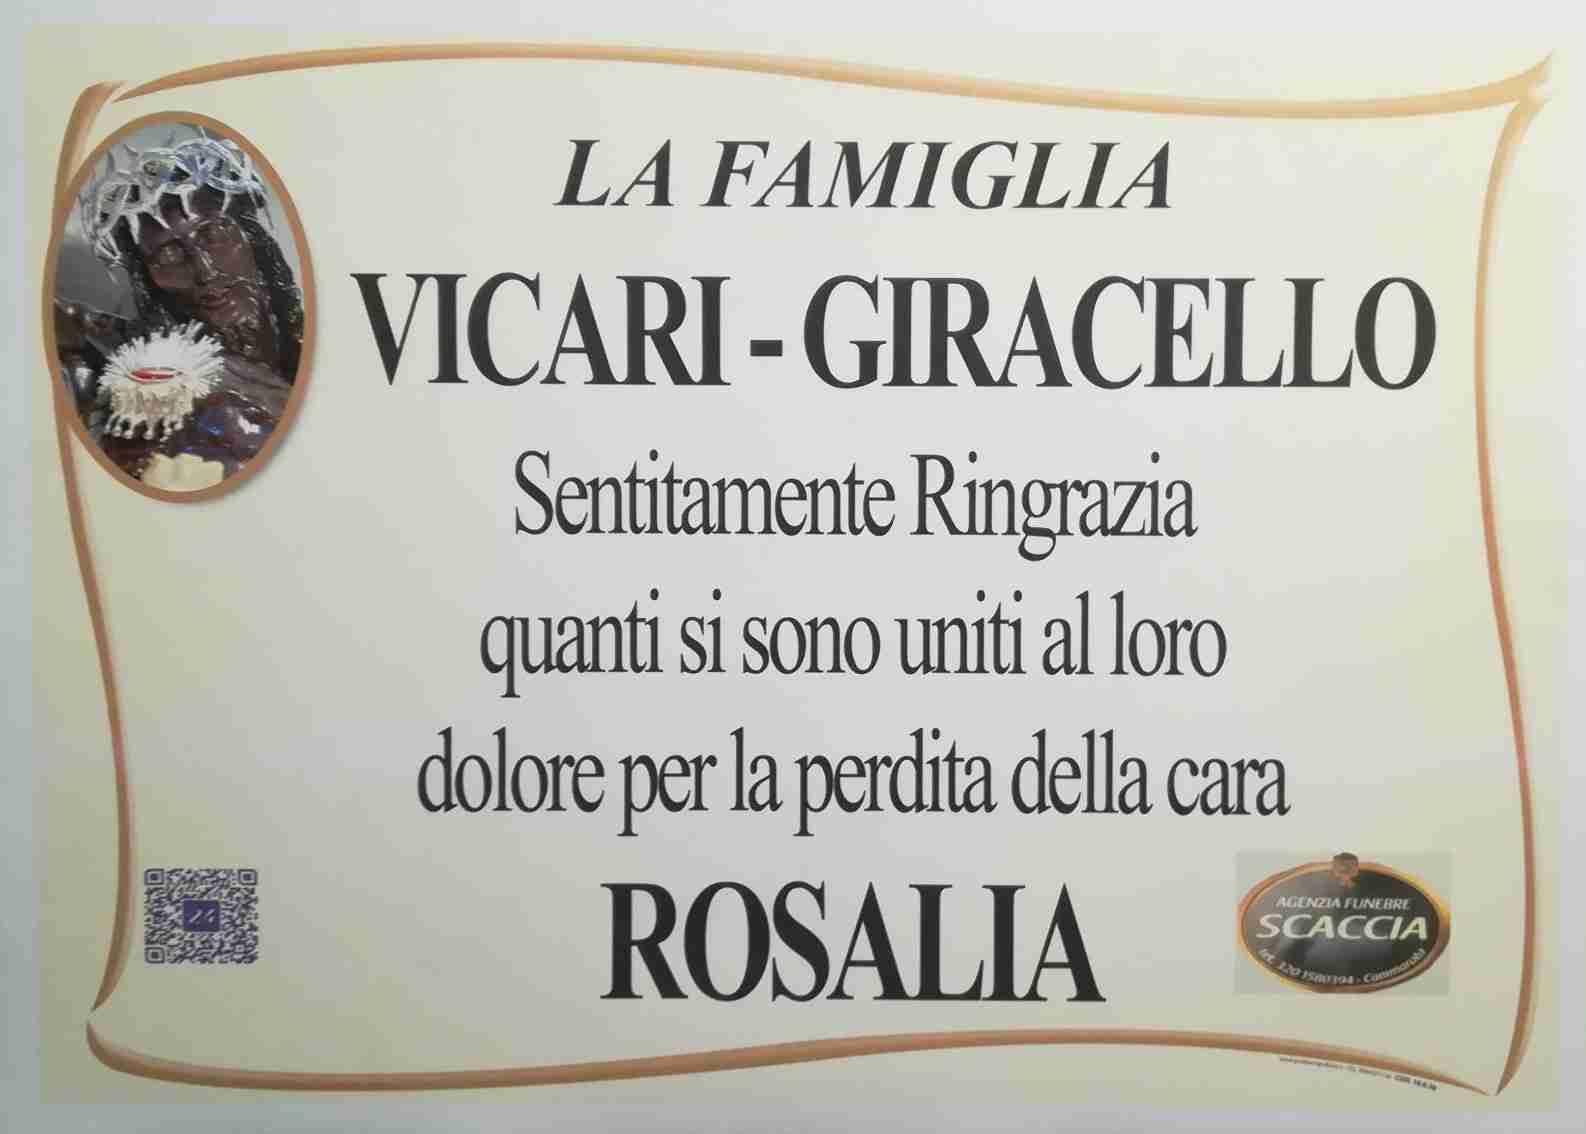 Rosalia Vicari